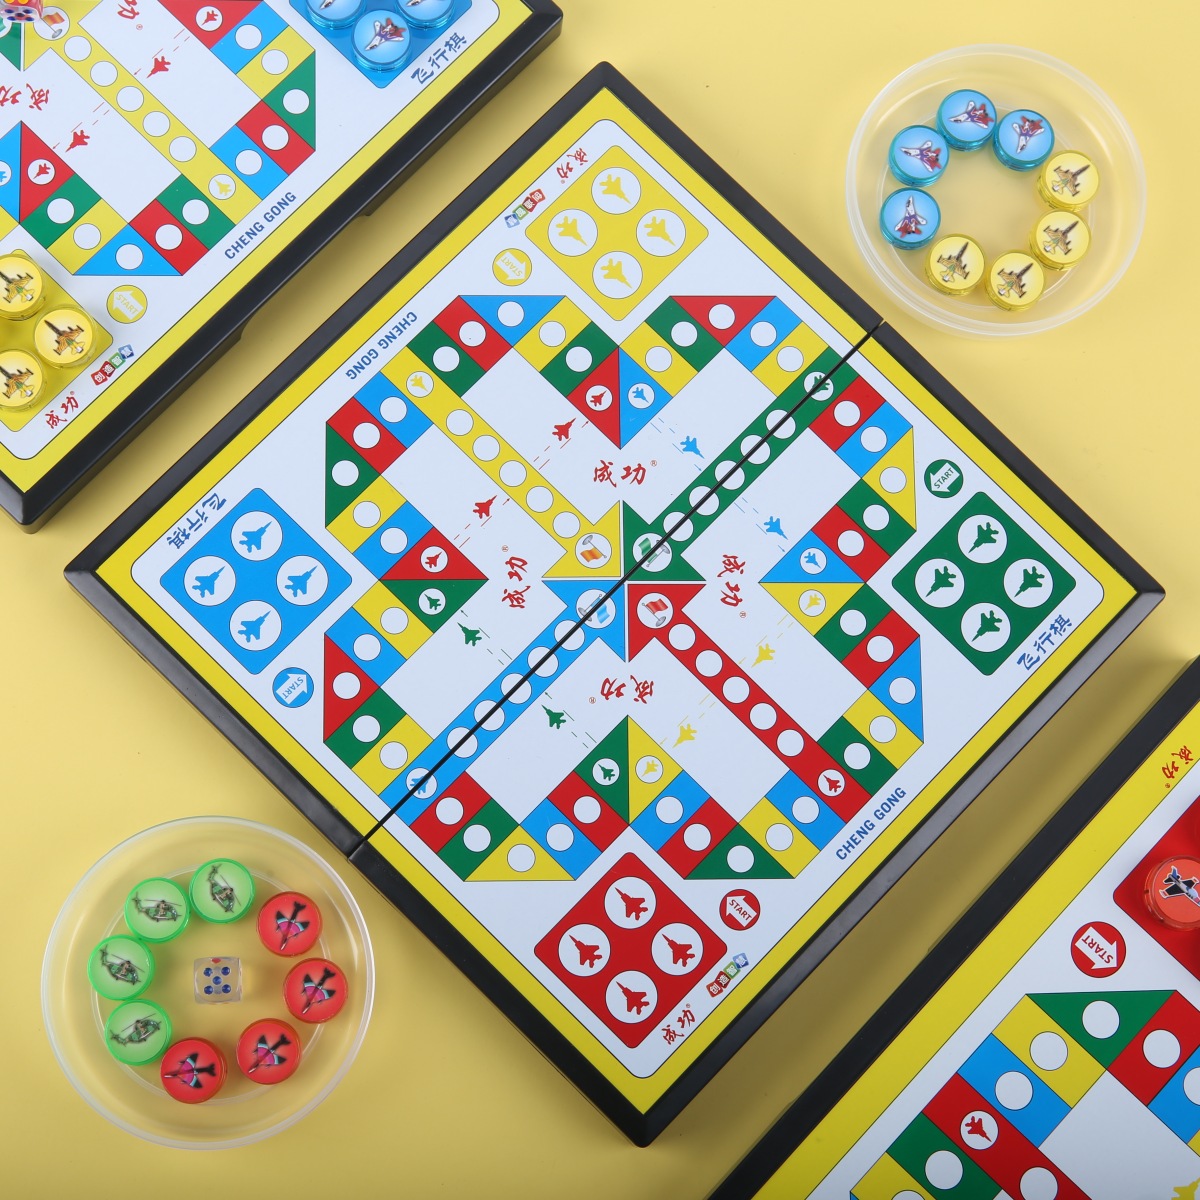 飞行棋儿童益智带磁性折叠式棋盘套装成功大号幼儿园亲子游戏包邮